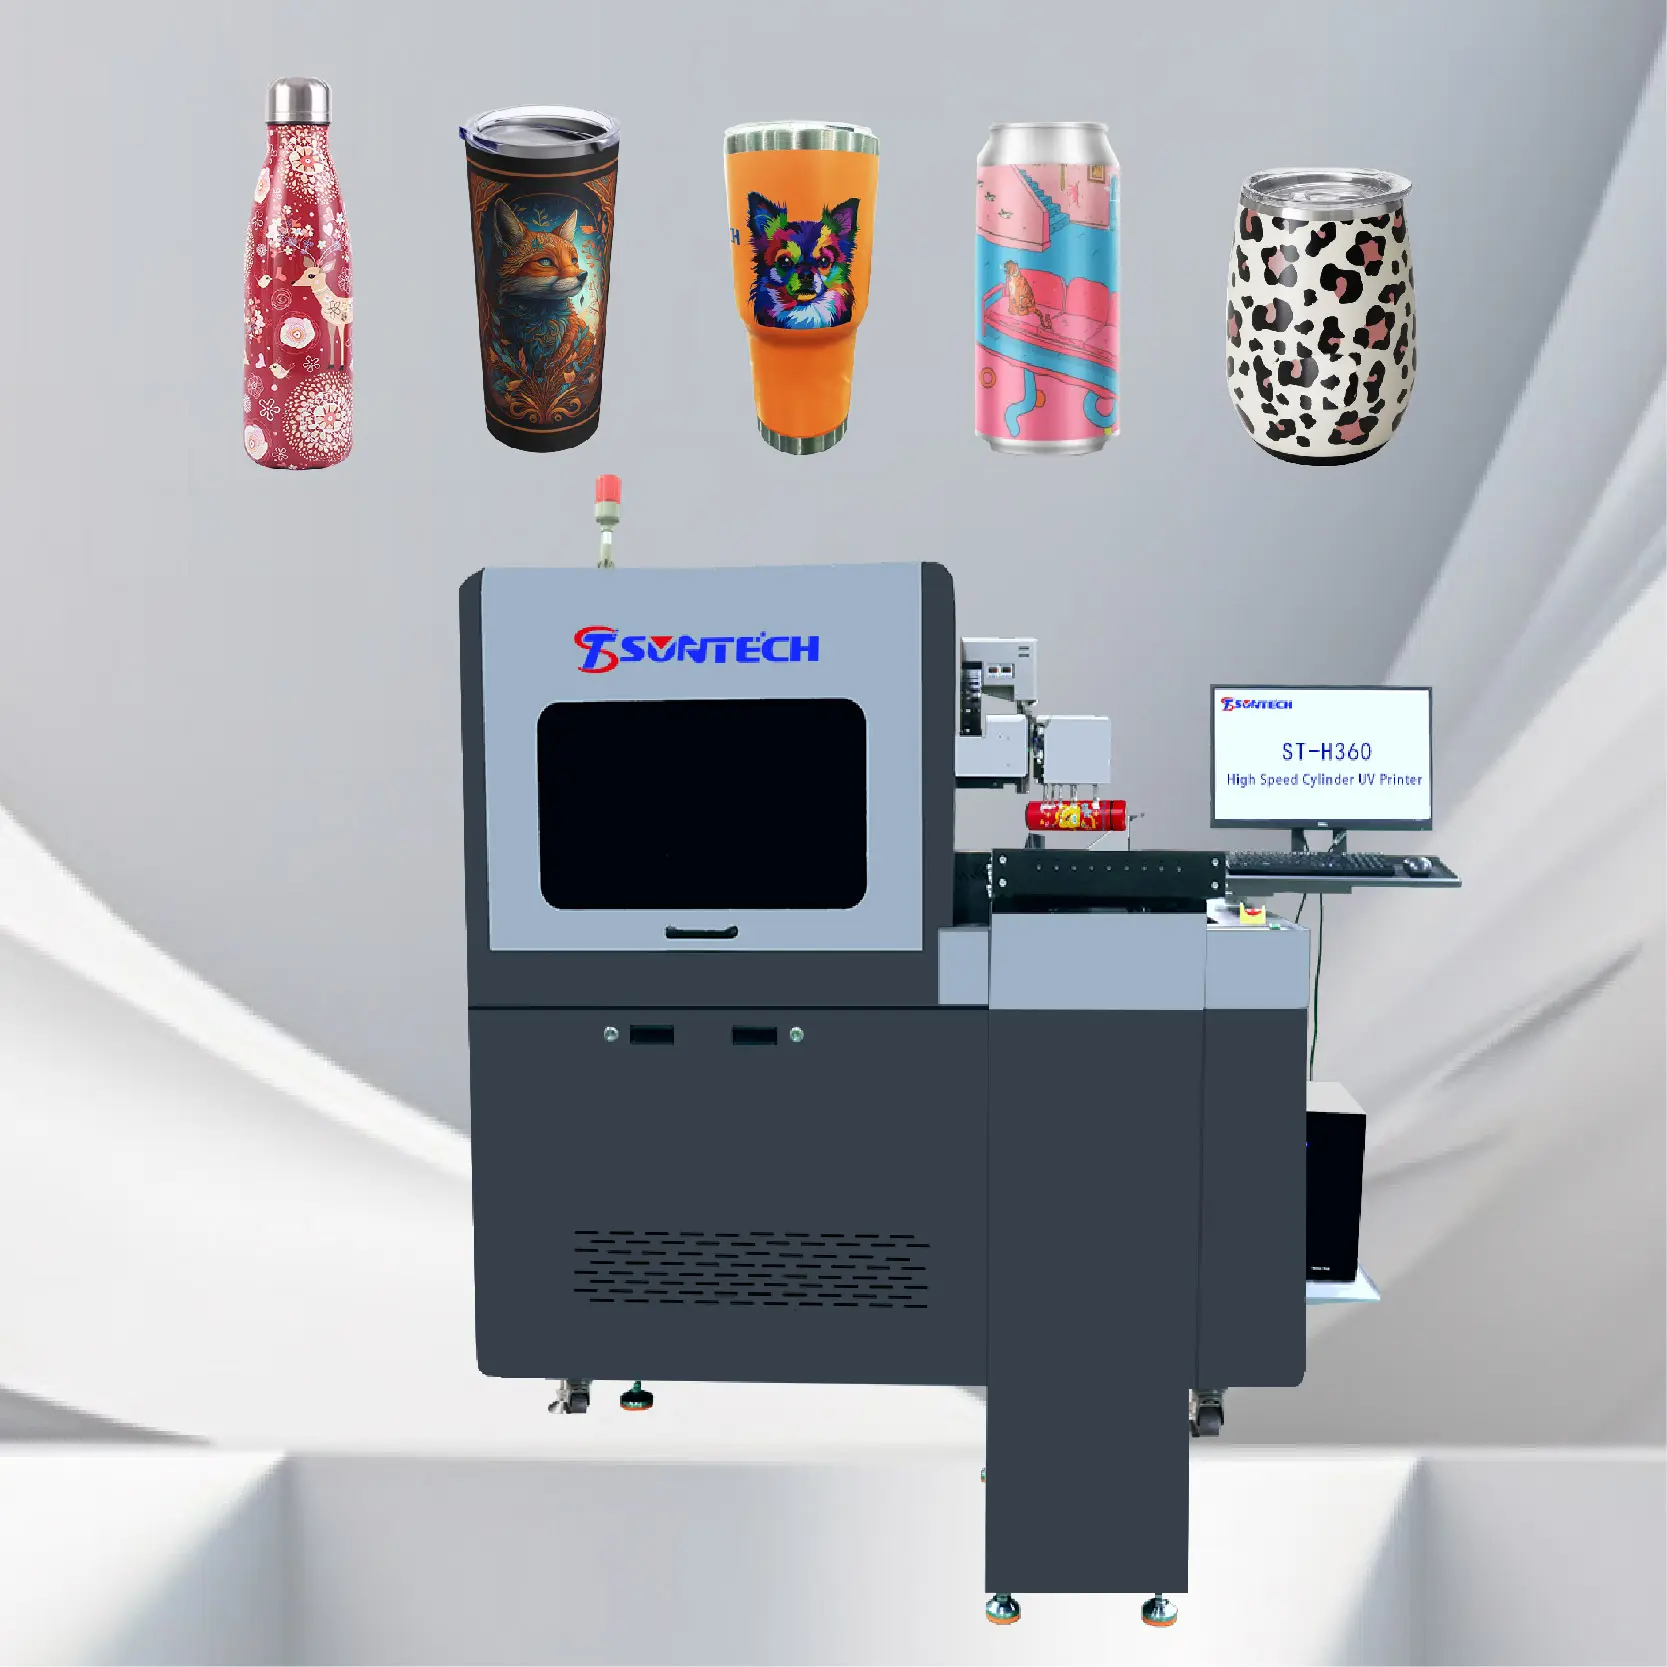 360 צילינדר דיגיטלי שולחני uv led מדפסת כלי משקאות ברוור נר מכונת הדפסה תעשייתית